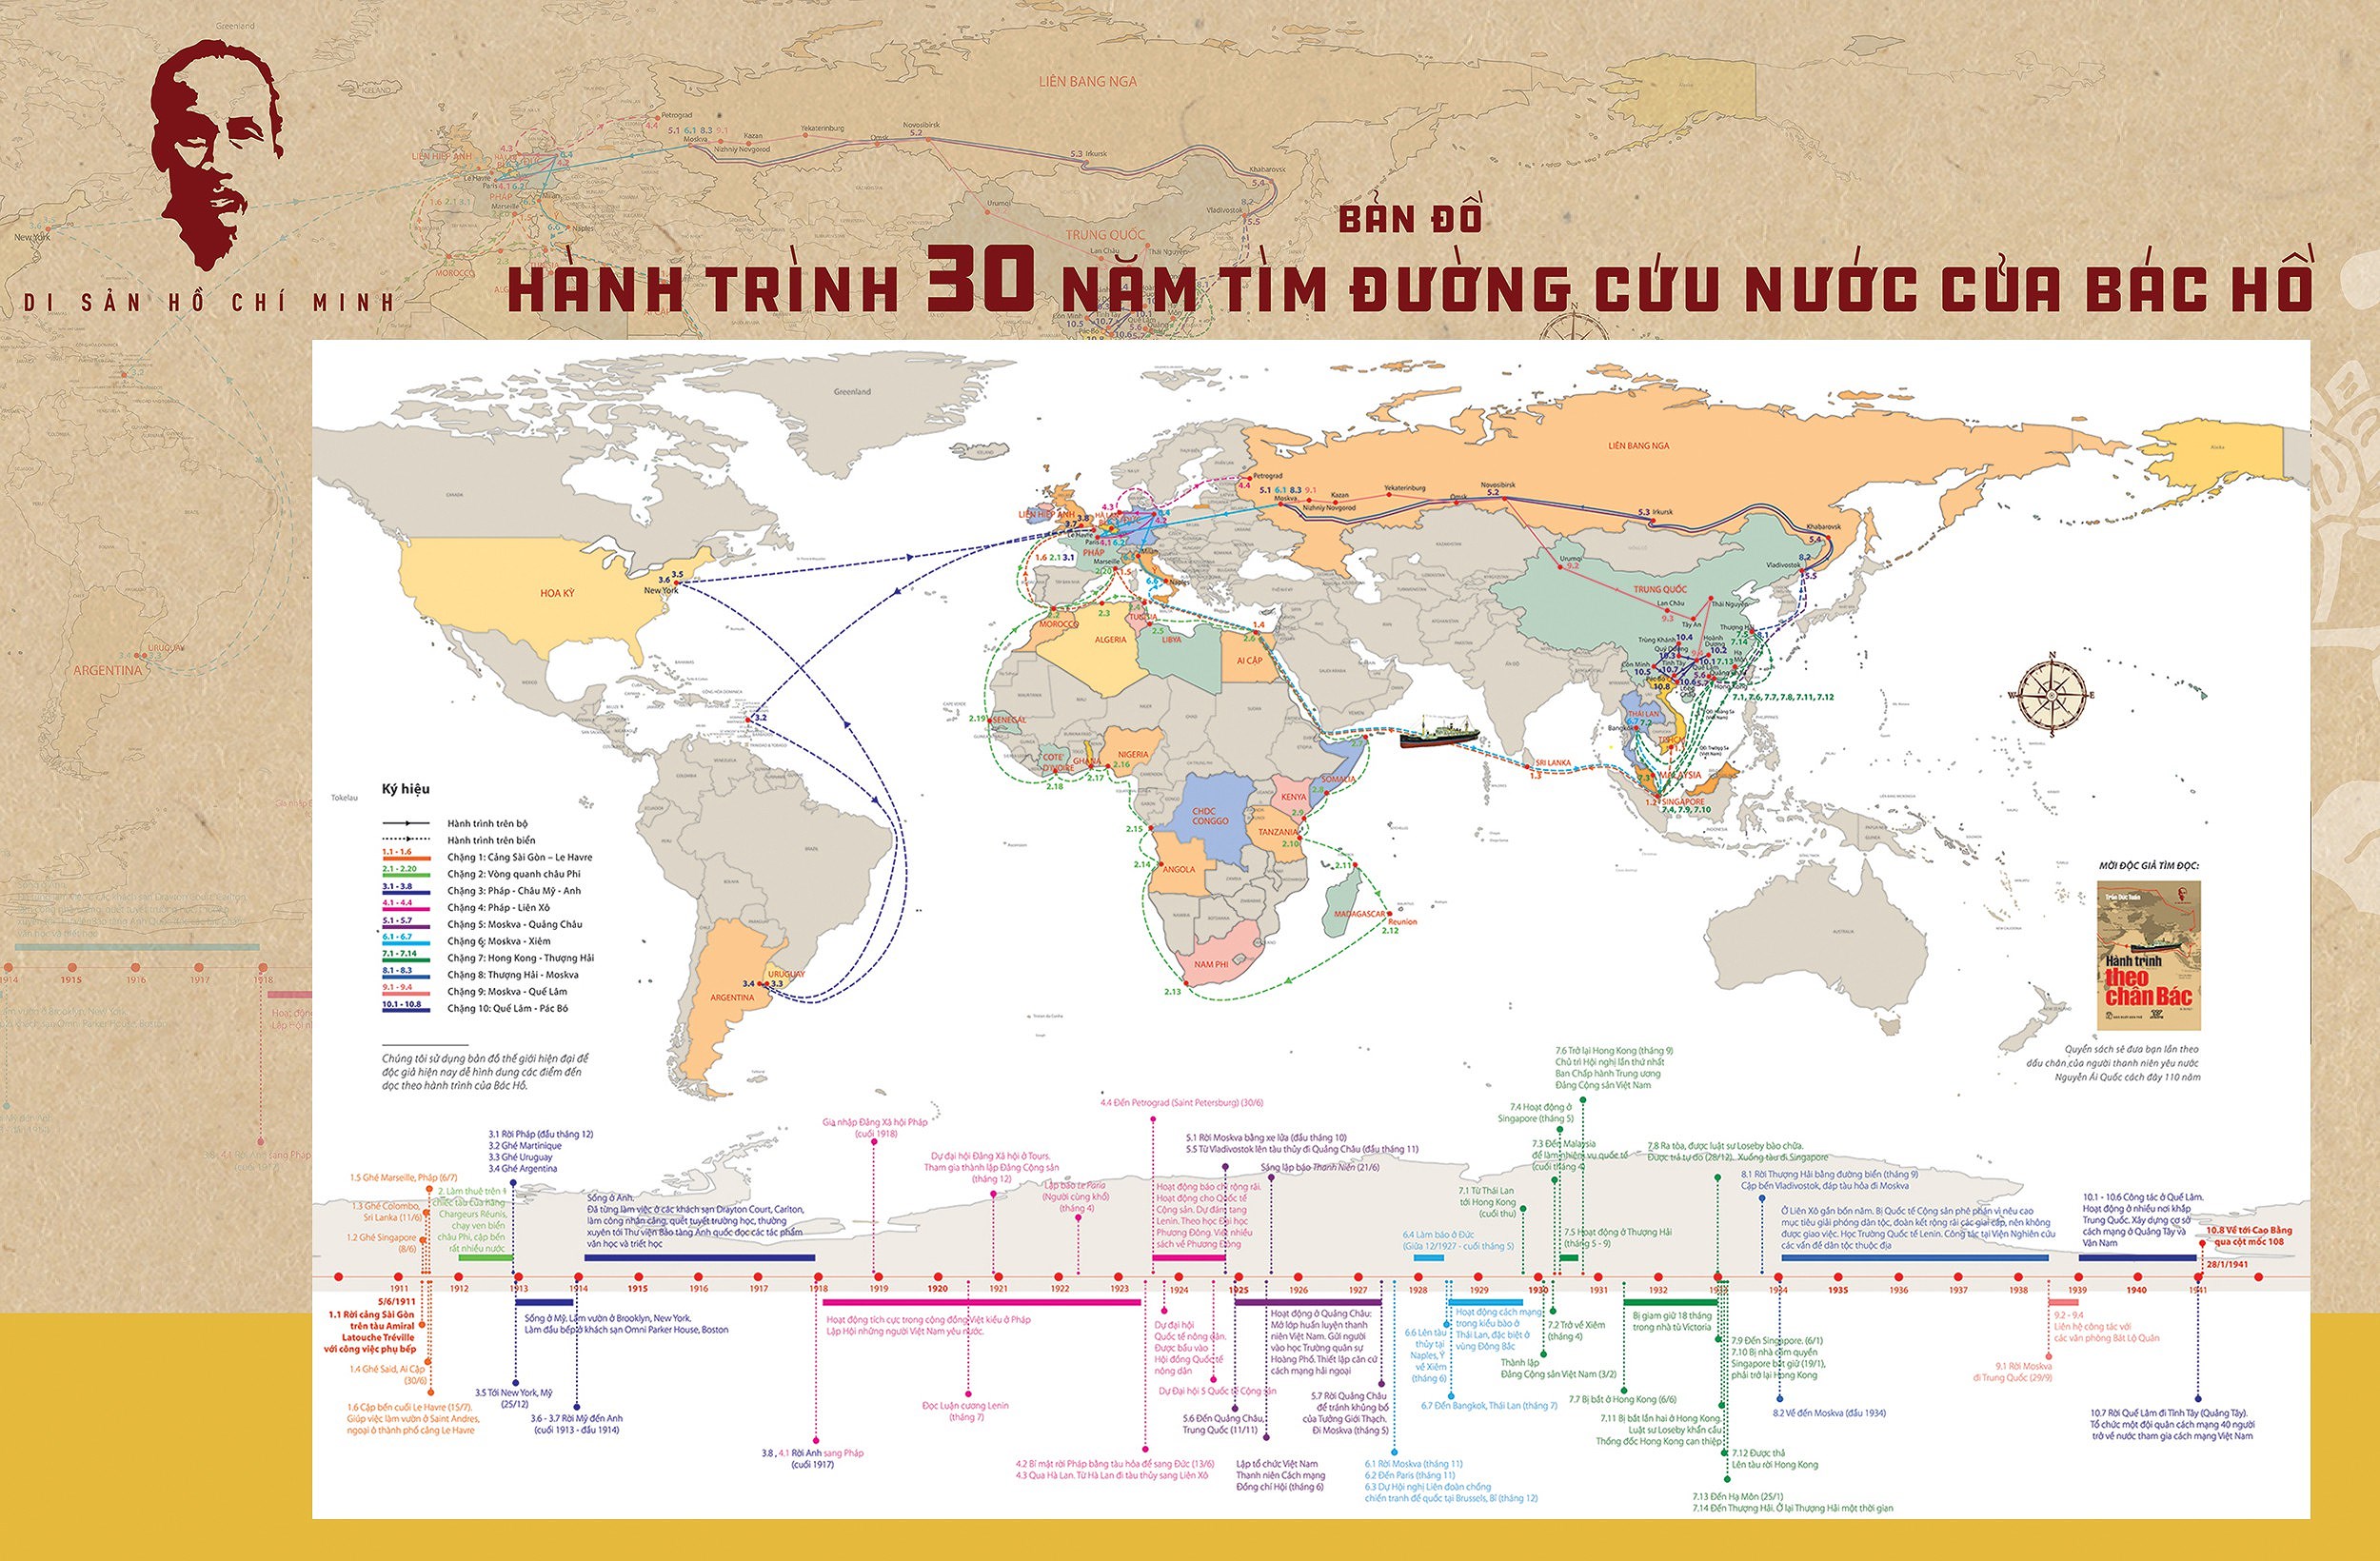 Publication d’une "Carte du voyage de 30 ans de l'Oncle Ho pour trouver la voie du salut national" hinh anh 1